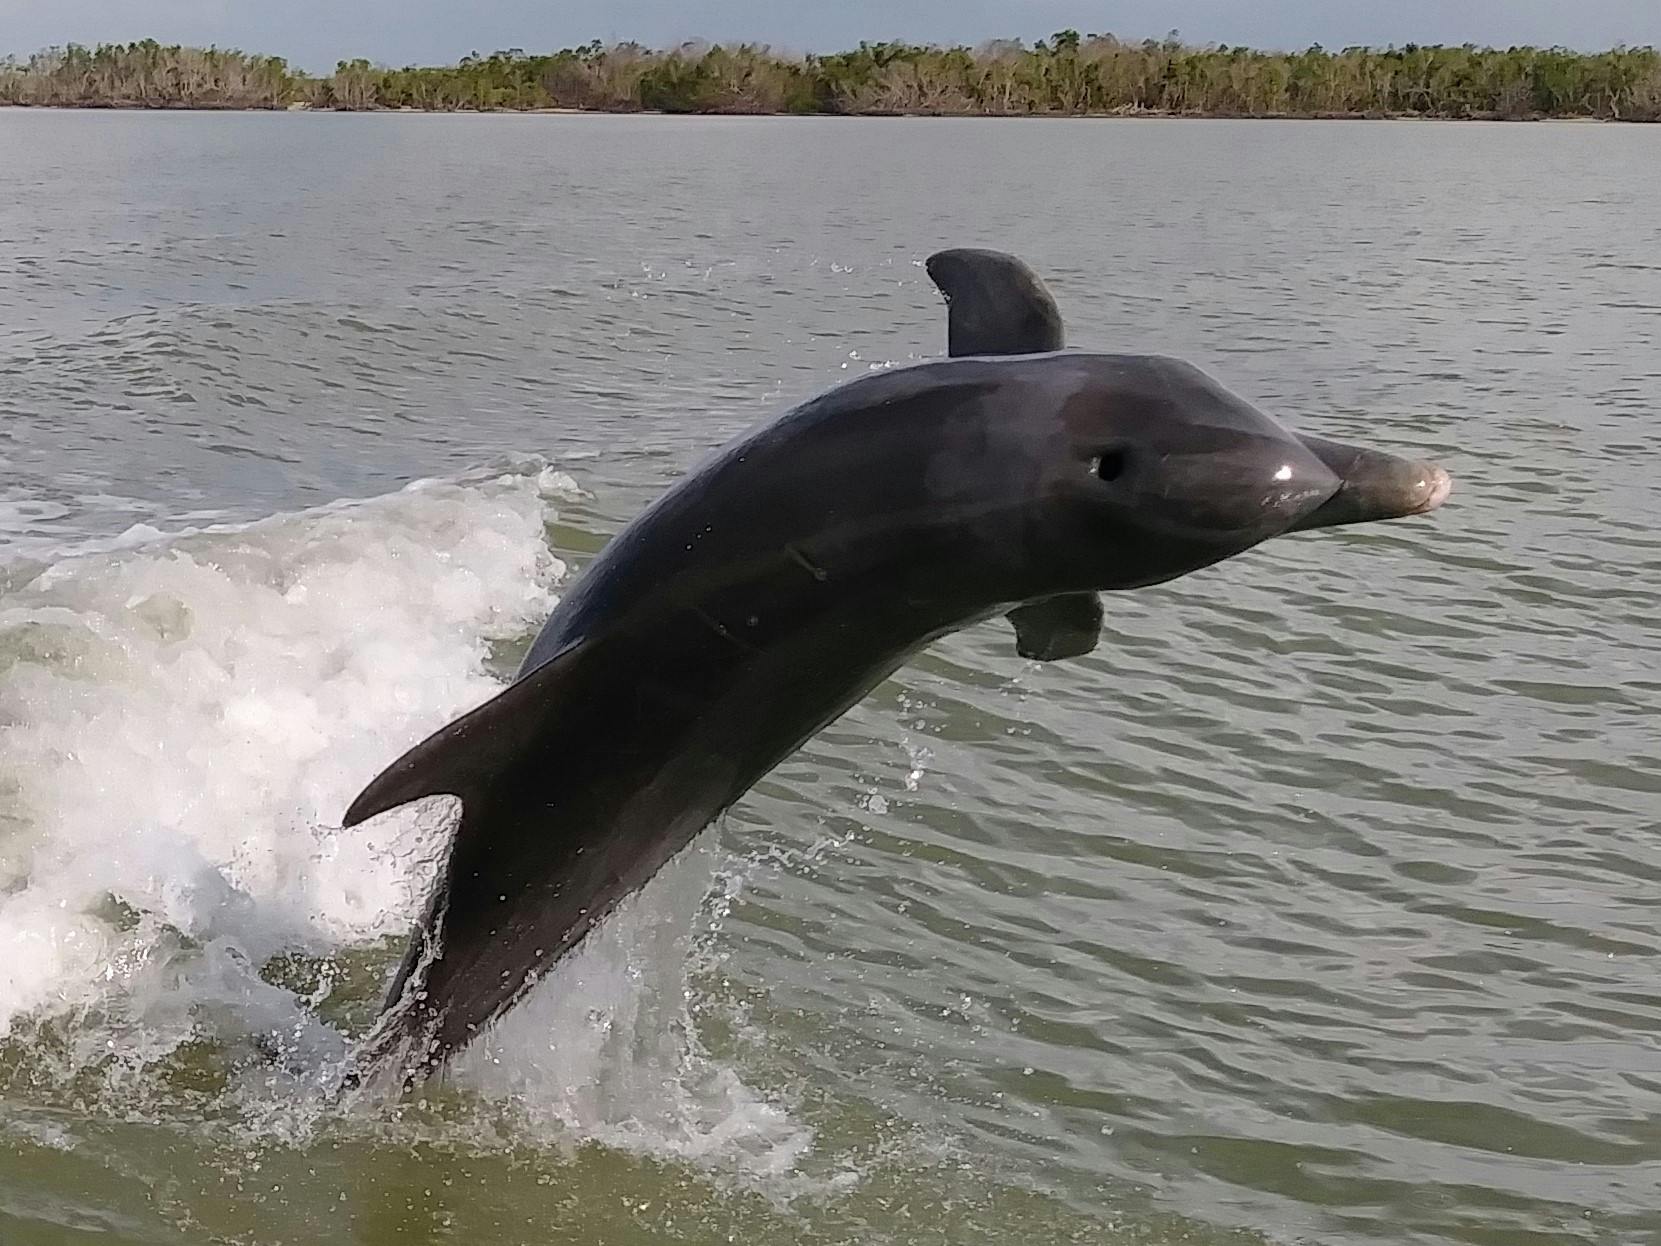 Wycieczka łodzią z delfinami, ptakami i dziką przyrodą w Parku Narodowym Everglades